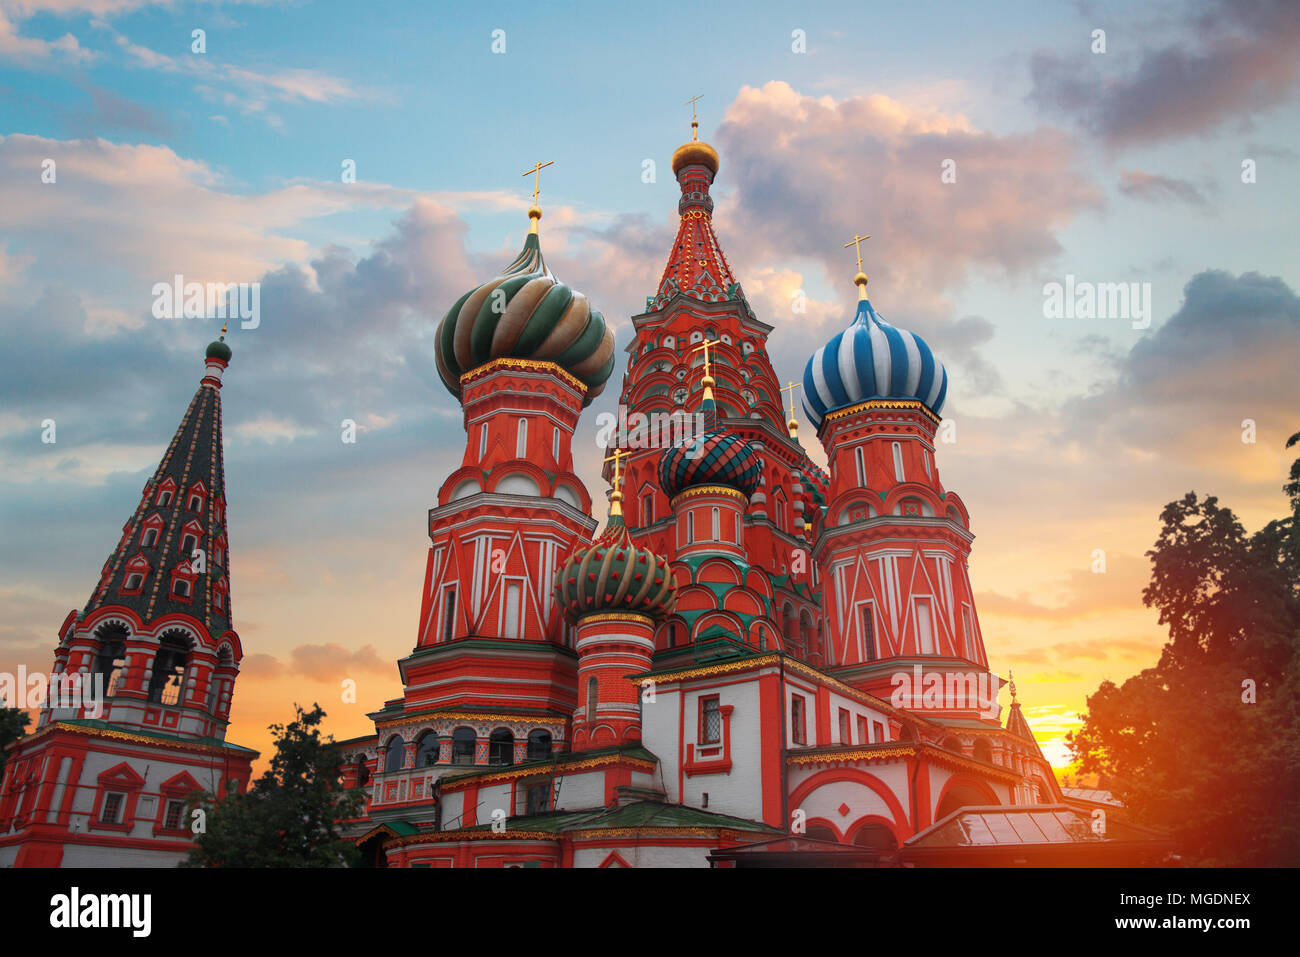 Basilius Kathedrale - eine orthodoxe Kirche auf dem Roten Platz in Moskau, eine bekannte Denkmal der russischen Architektur. Stockfoto